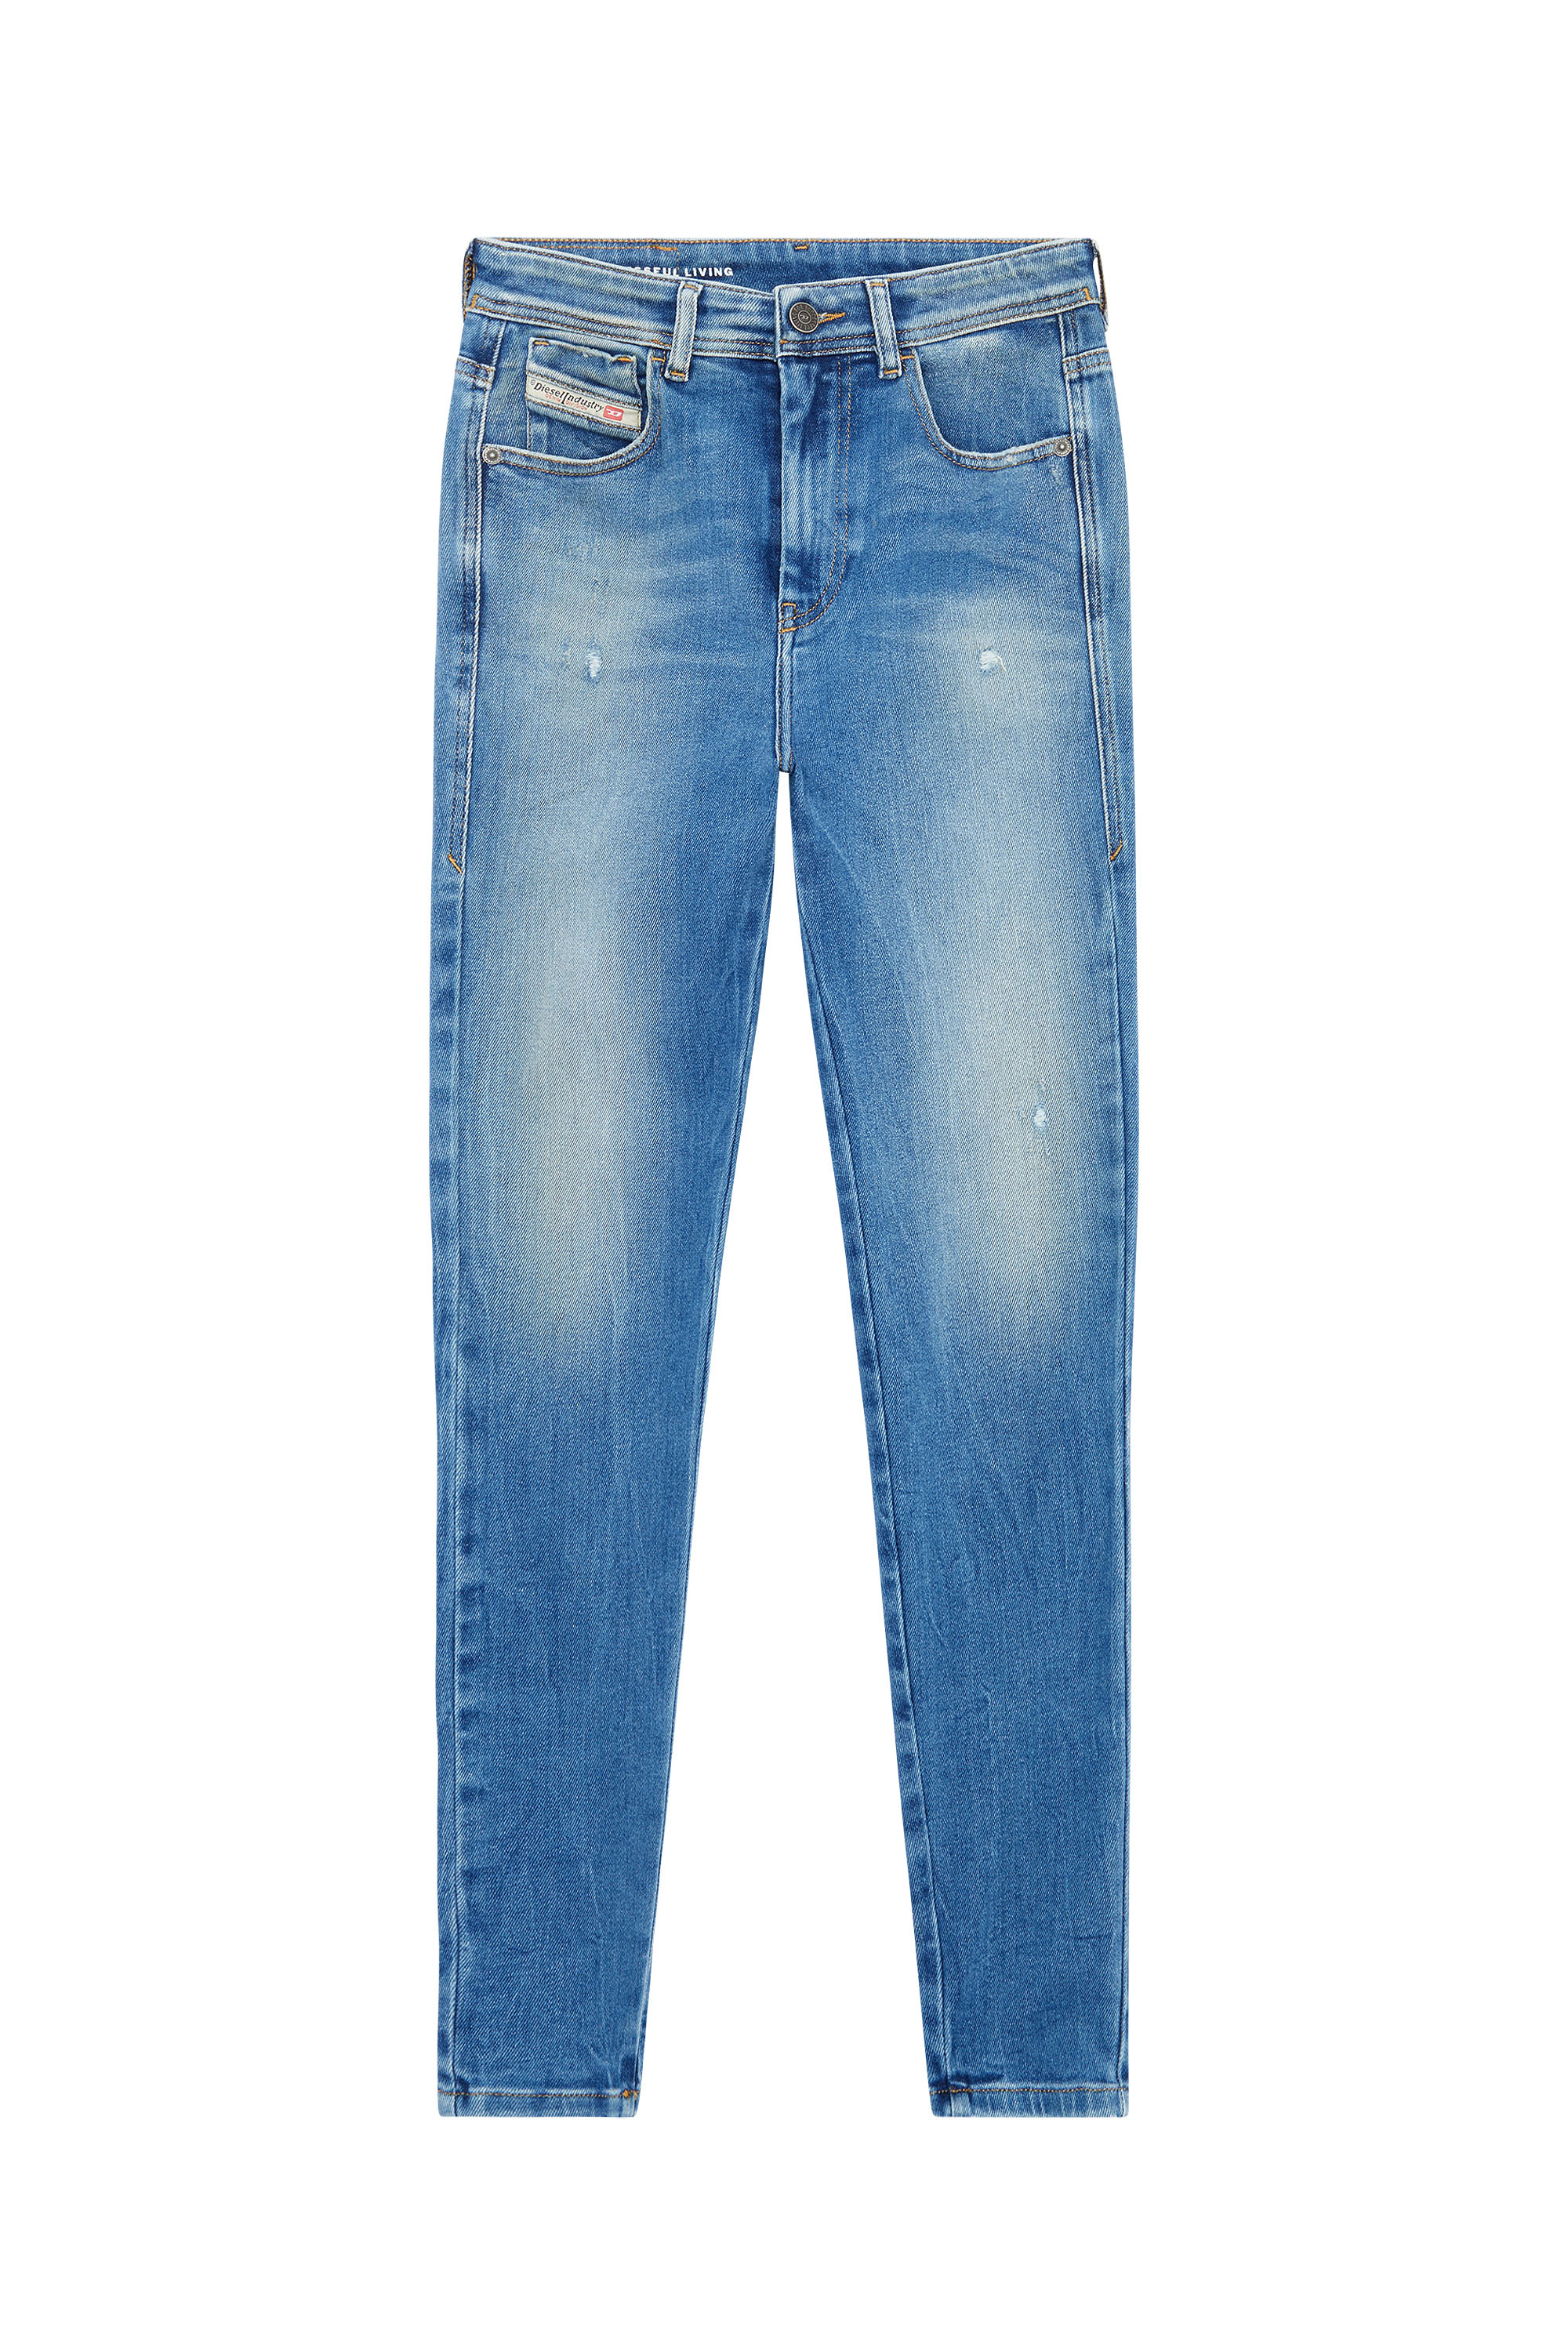 Diesel - Super skinny Jeans 1984 Slandy-High 09E91, Light Blue - Image 5